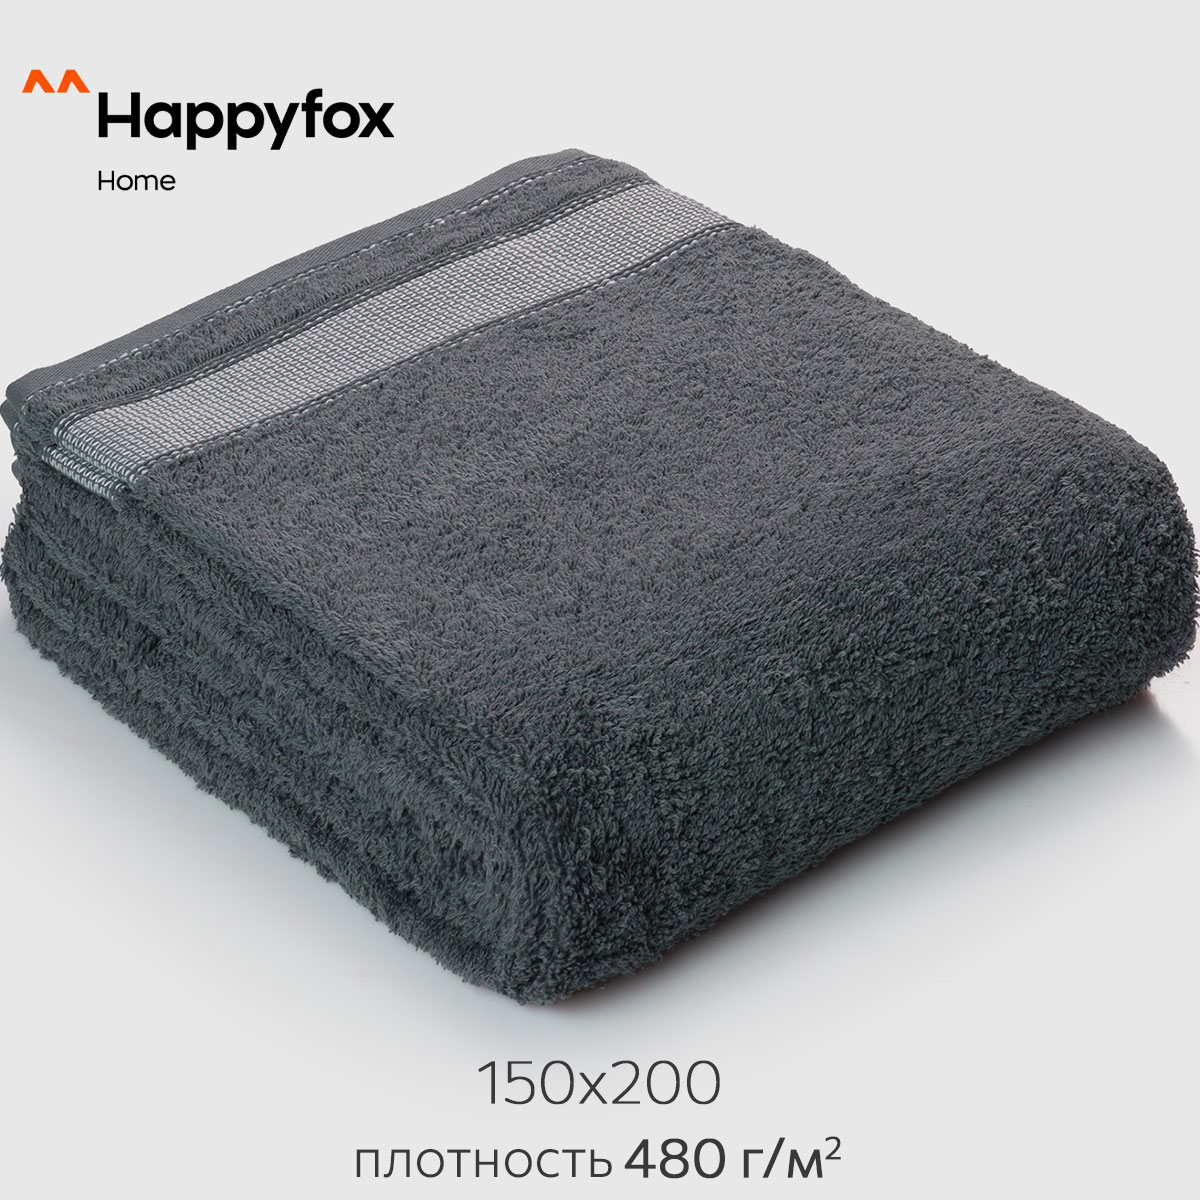 Простыня Happy Fox Home HF150200N серый 150X200